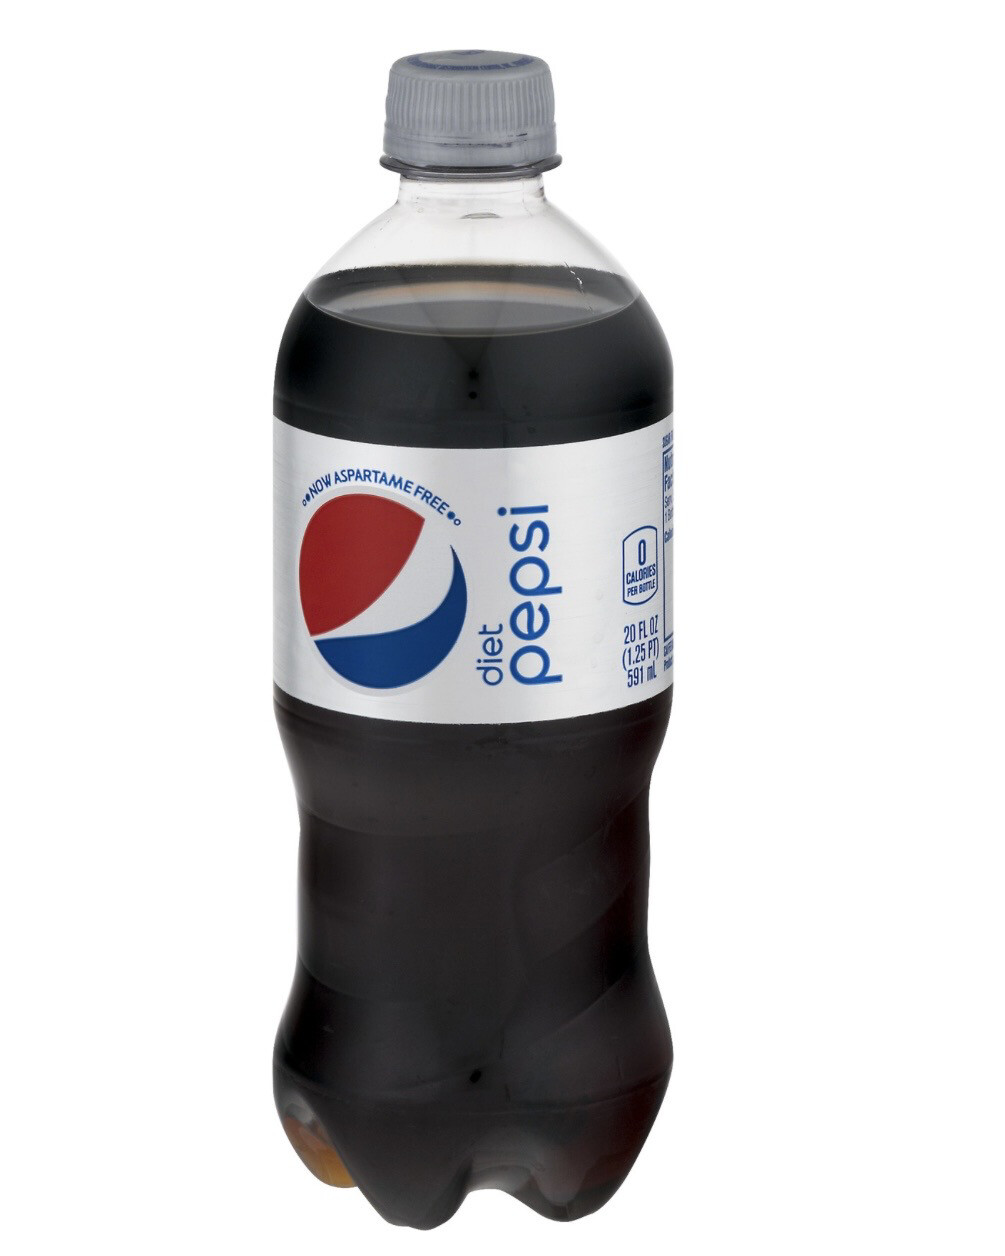 20oz Diet Pepsi